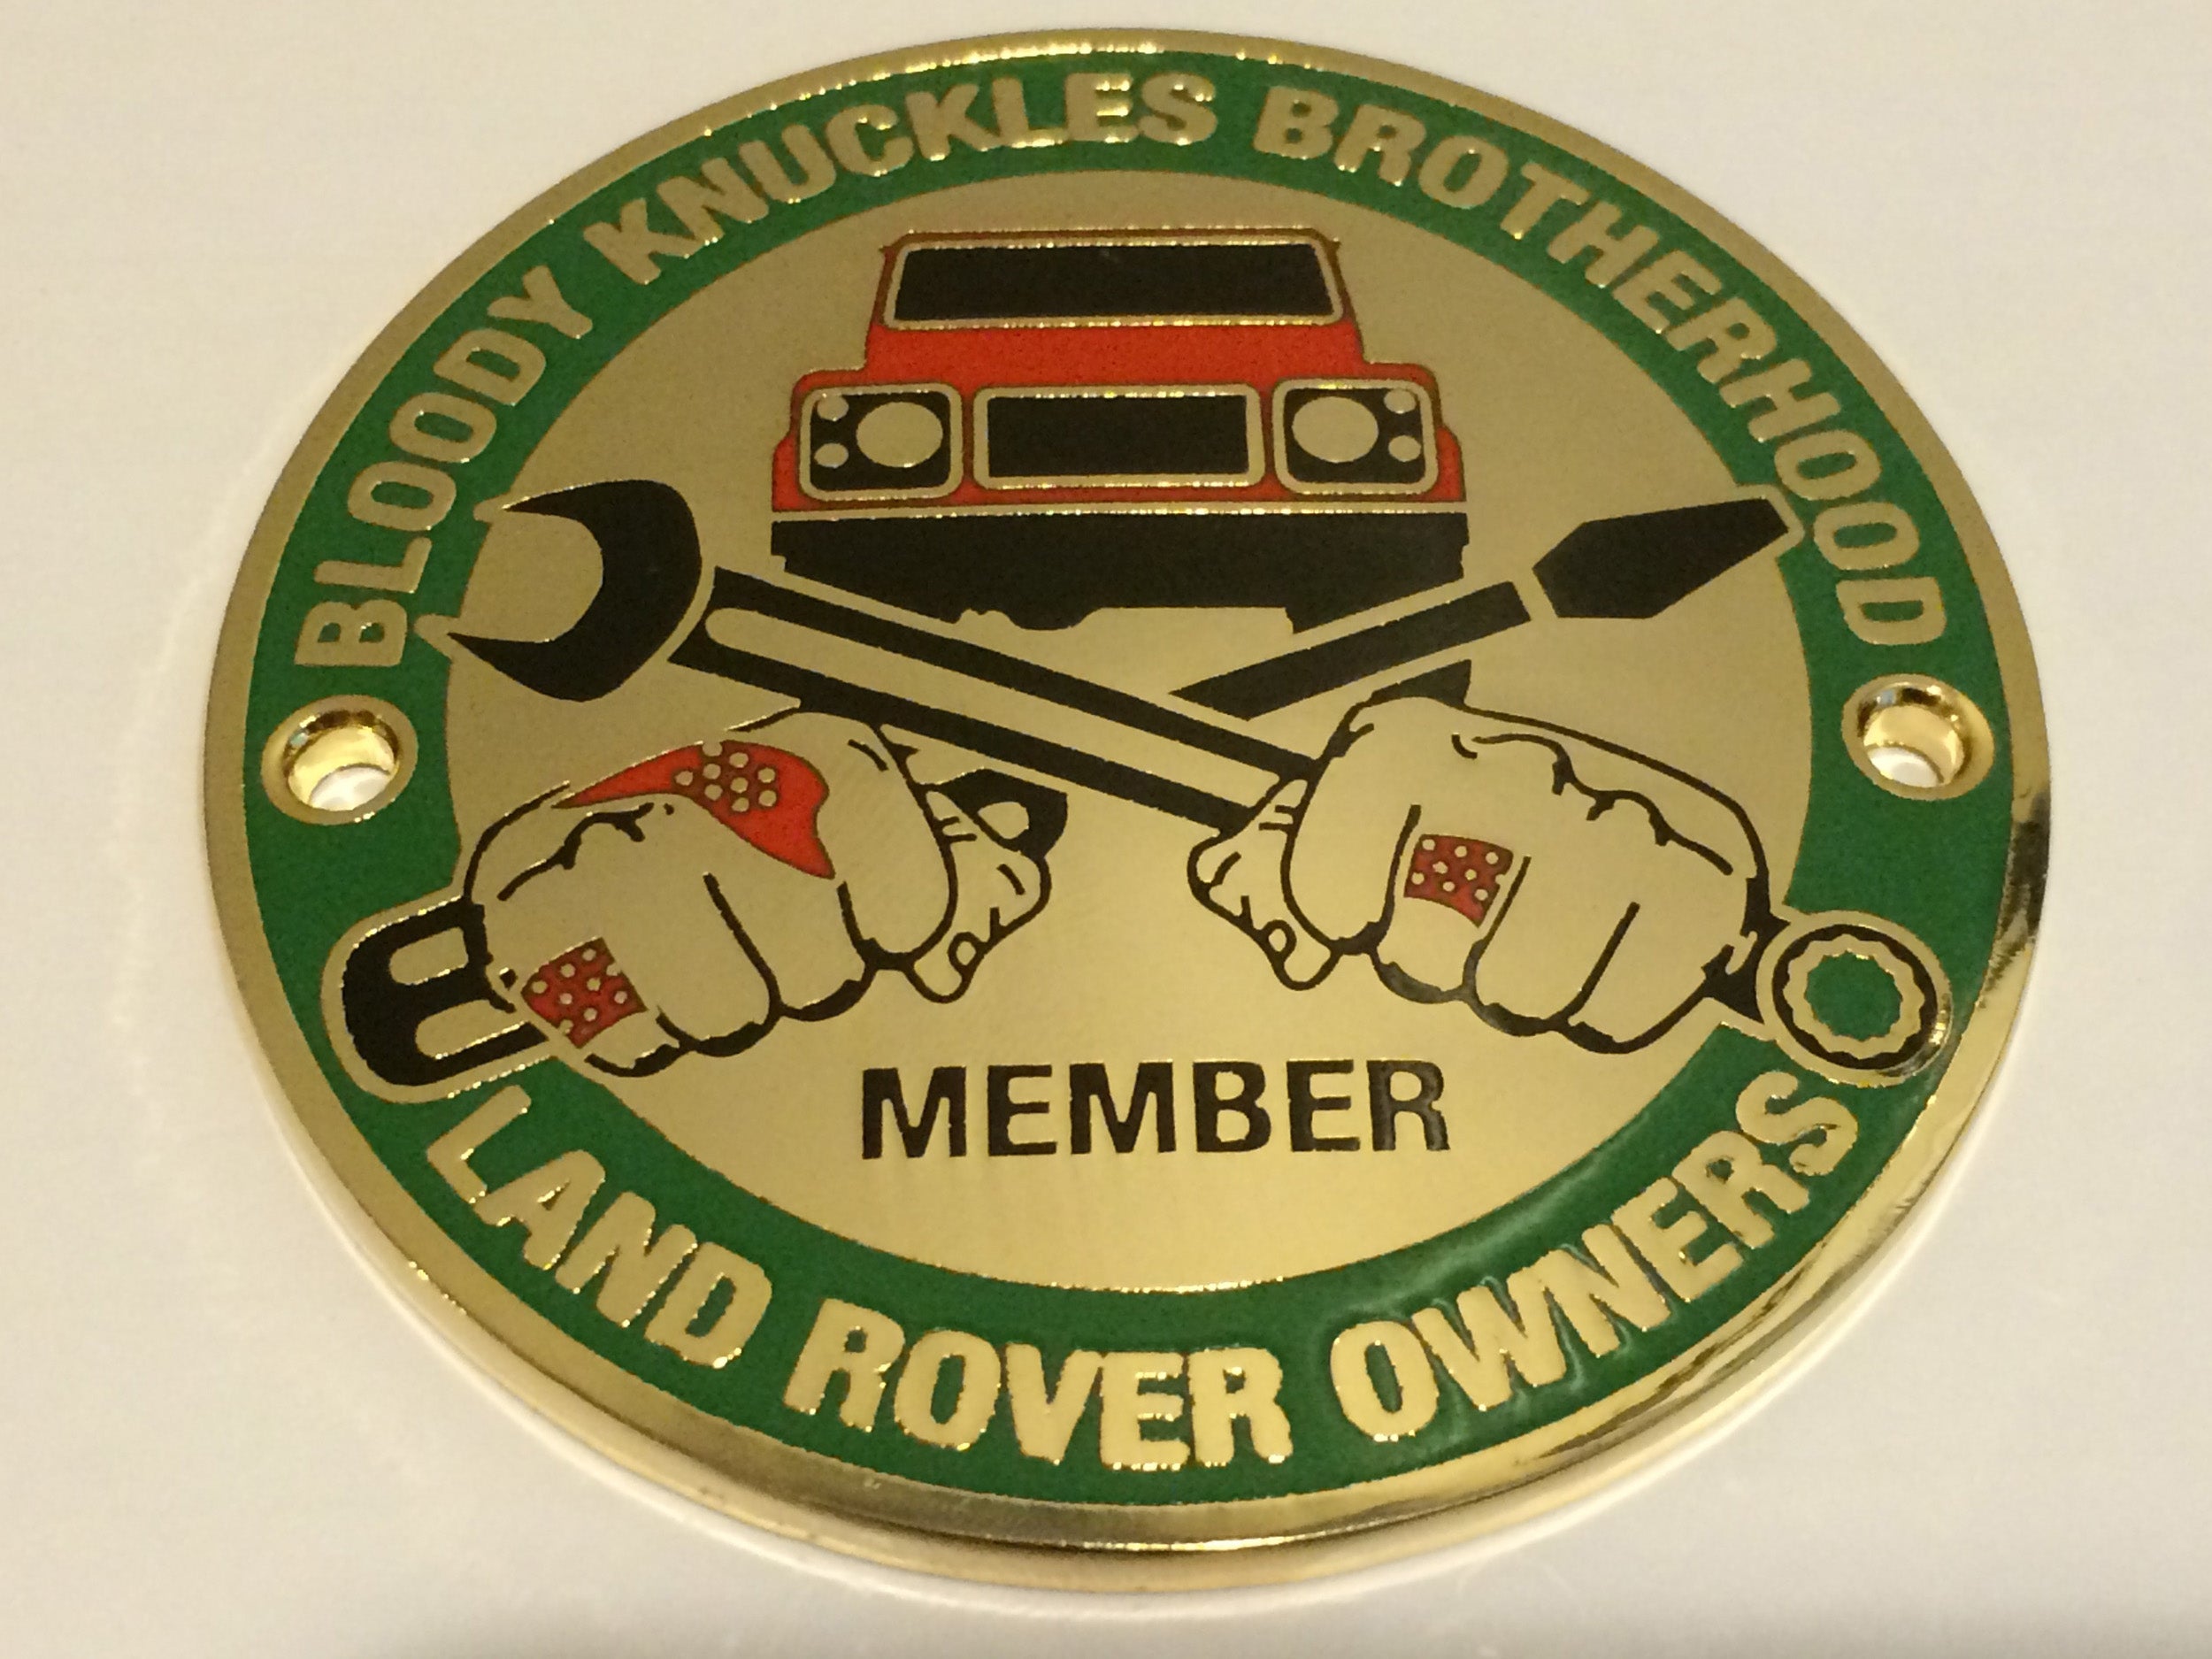 "Bloody Knuckles Brotherhood: Member" Round 3-inch Metal Grille Badge